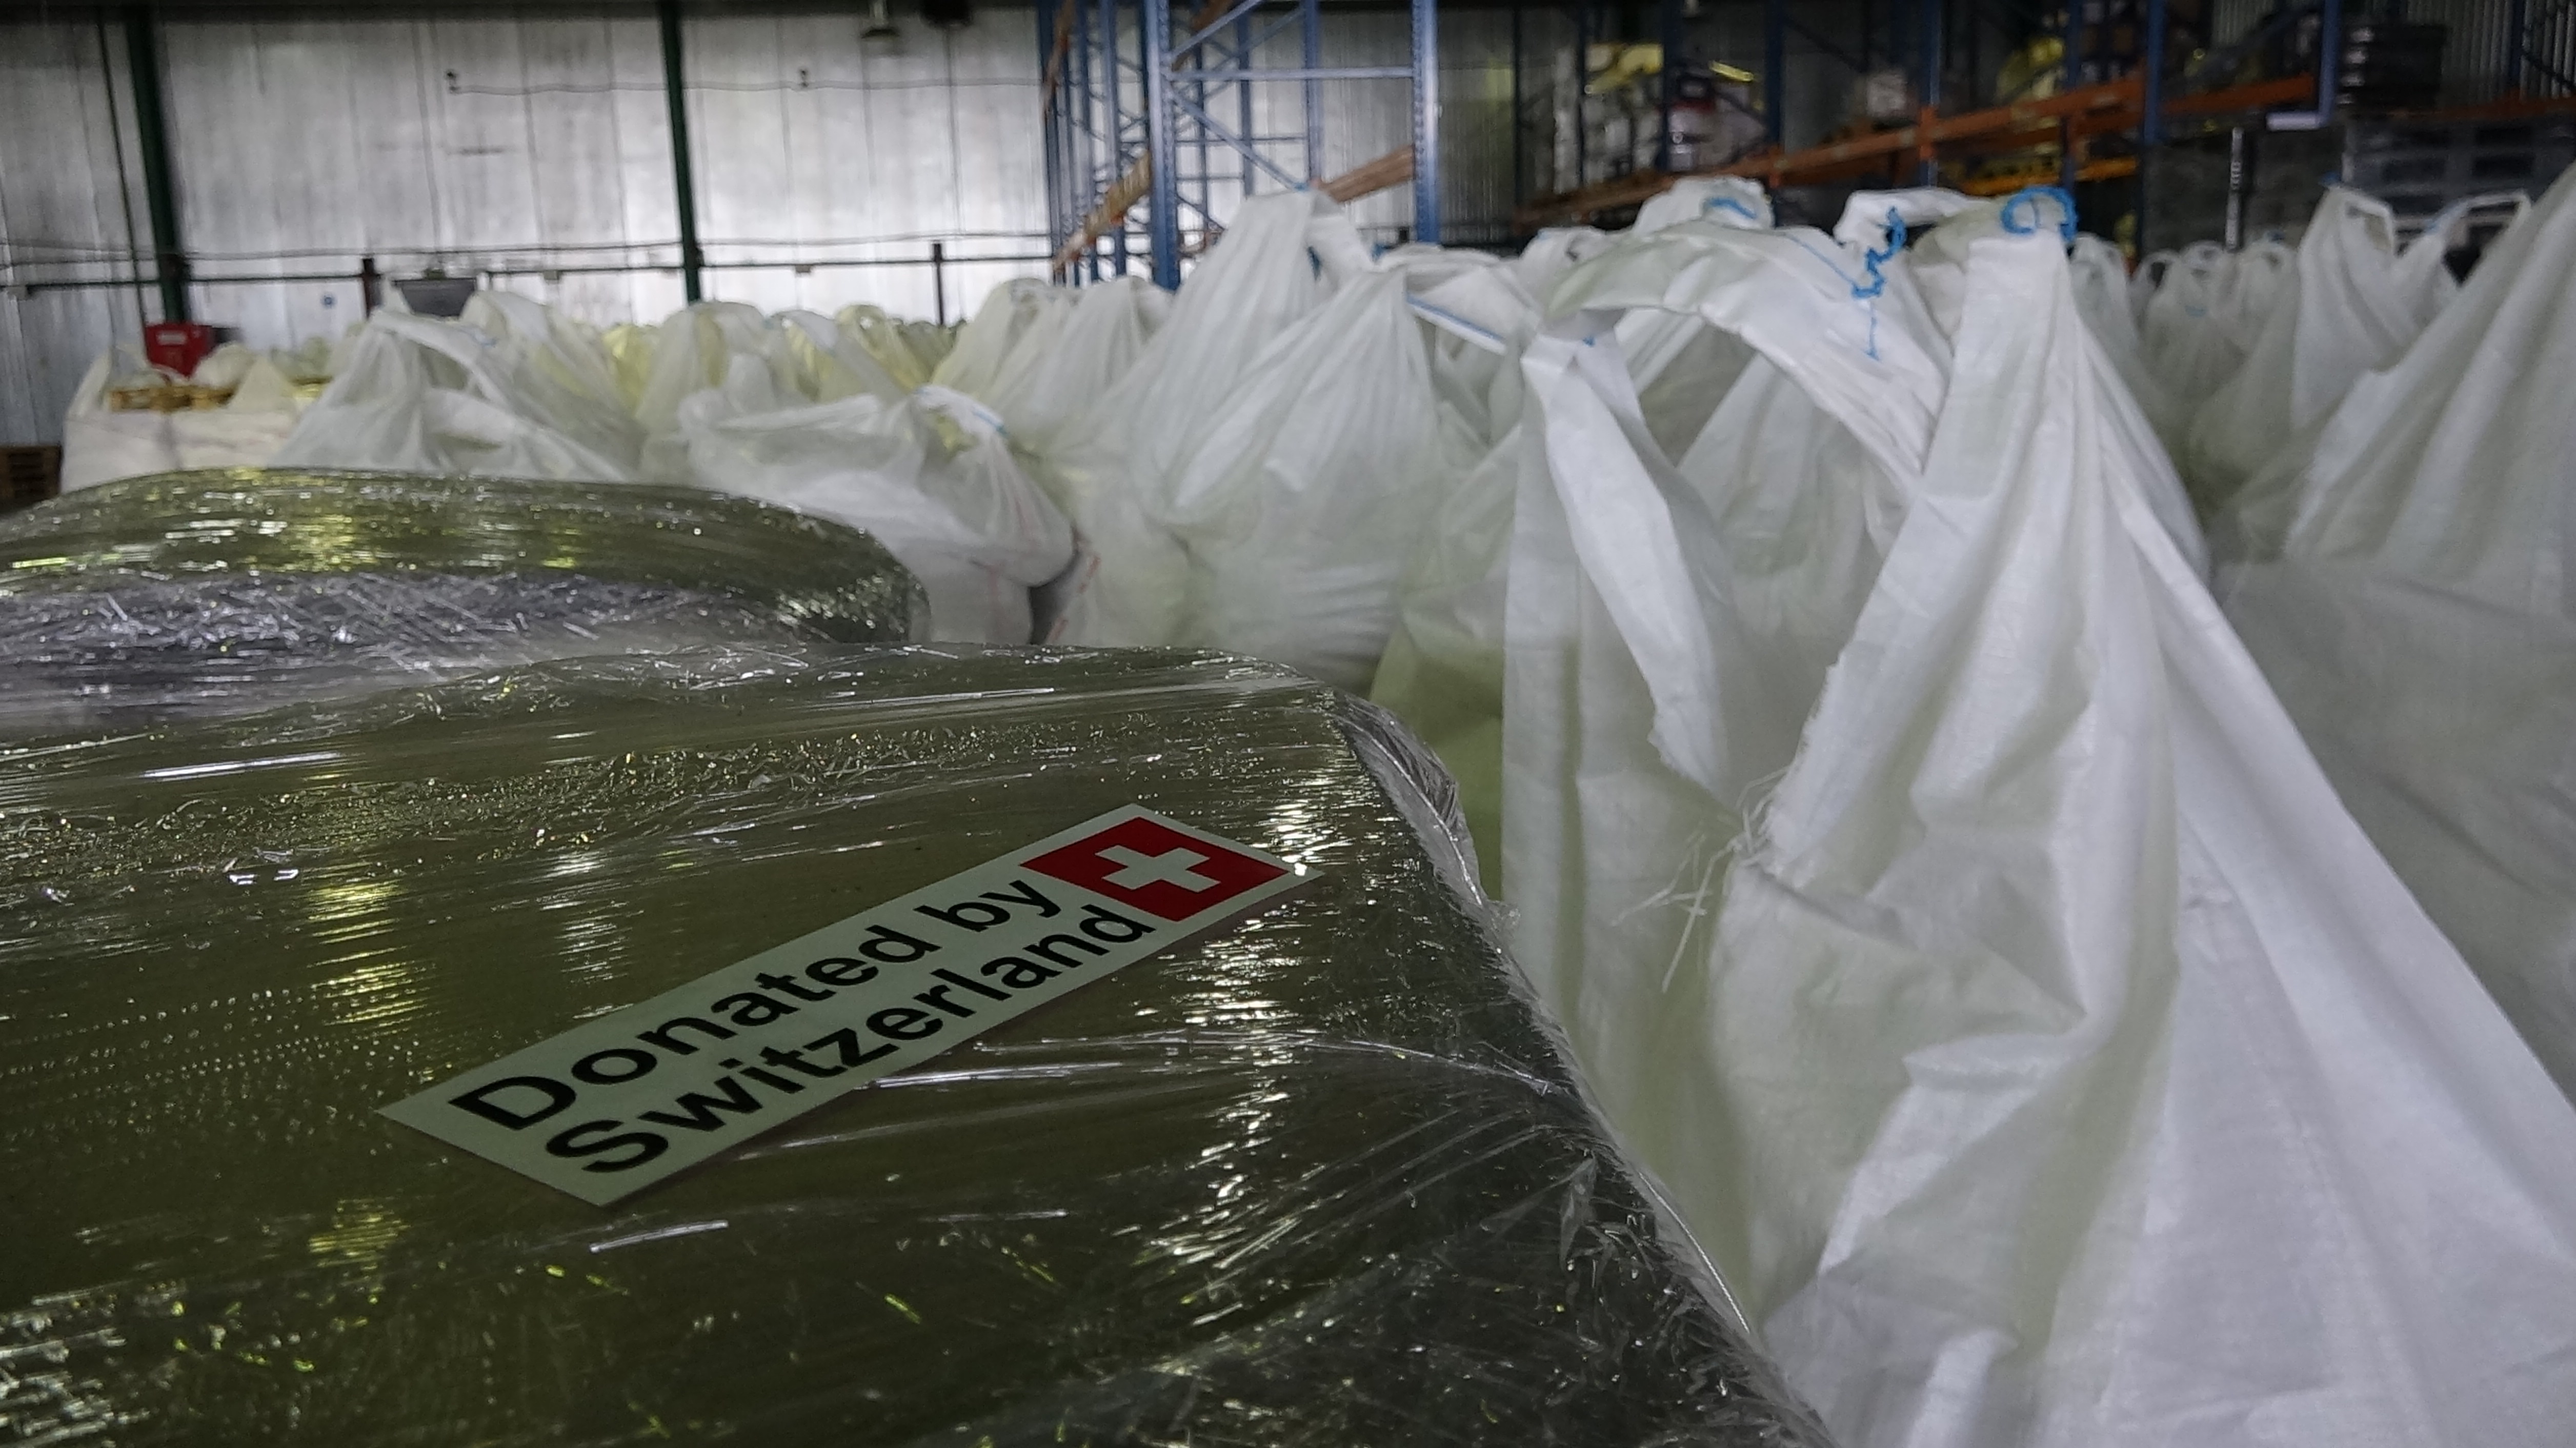 Arrivée à Donetsk du convoi humanitaire suisse pour l’Ukraine orientale. La Suisse a envoyé un convoi chargé de 300 tonnes de produits chimiques pour le traitement de l’eau potable.